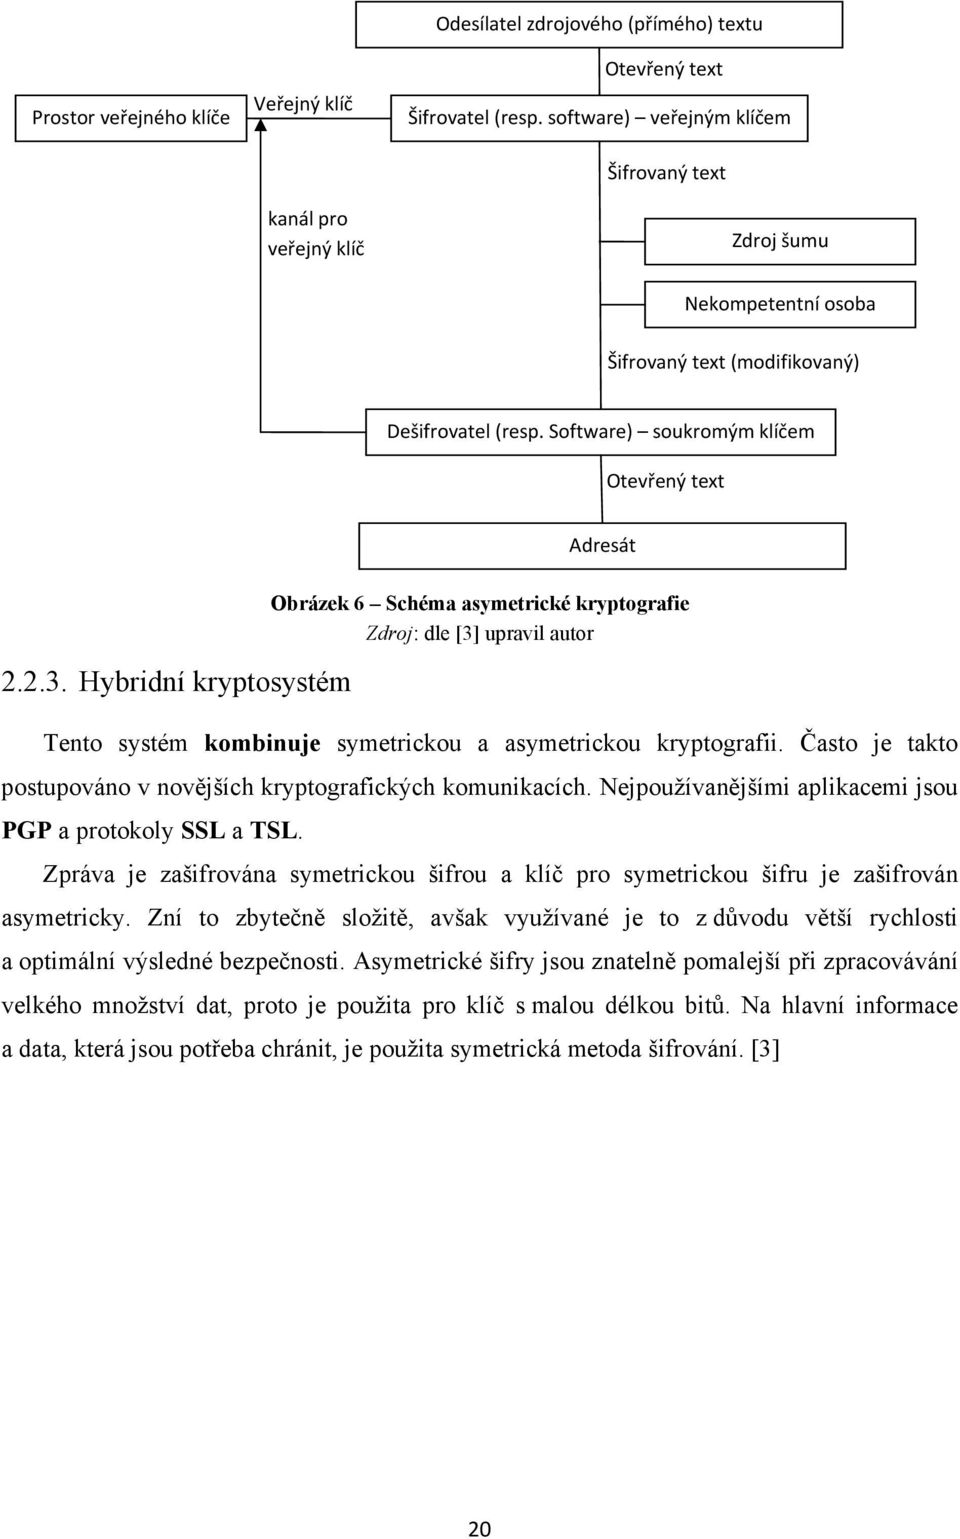 Hybridní kryptosystém Obrázek 6 Schéma asymetrické kryptografie Zdroj: dle [3] upravil autor Tento systém kombinuje symetrickou a asymetrickou kryptografii.